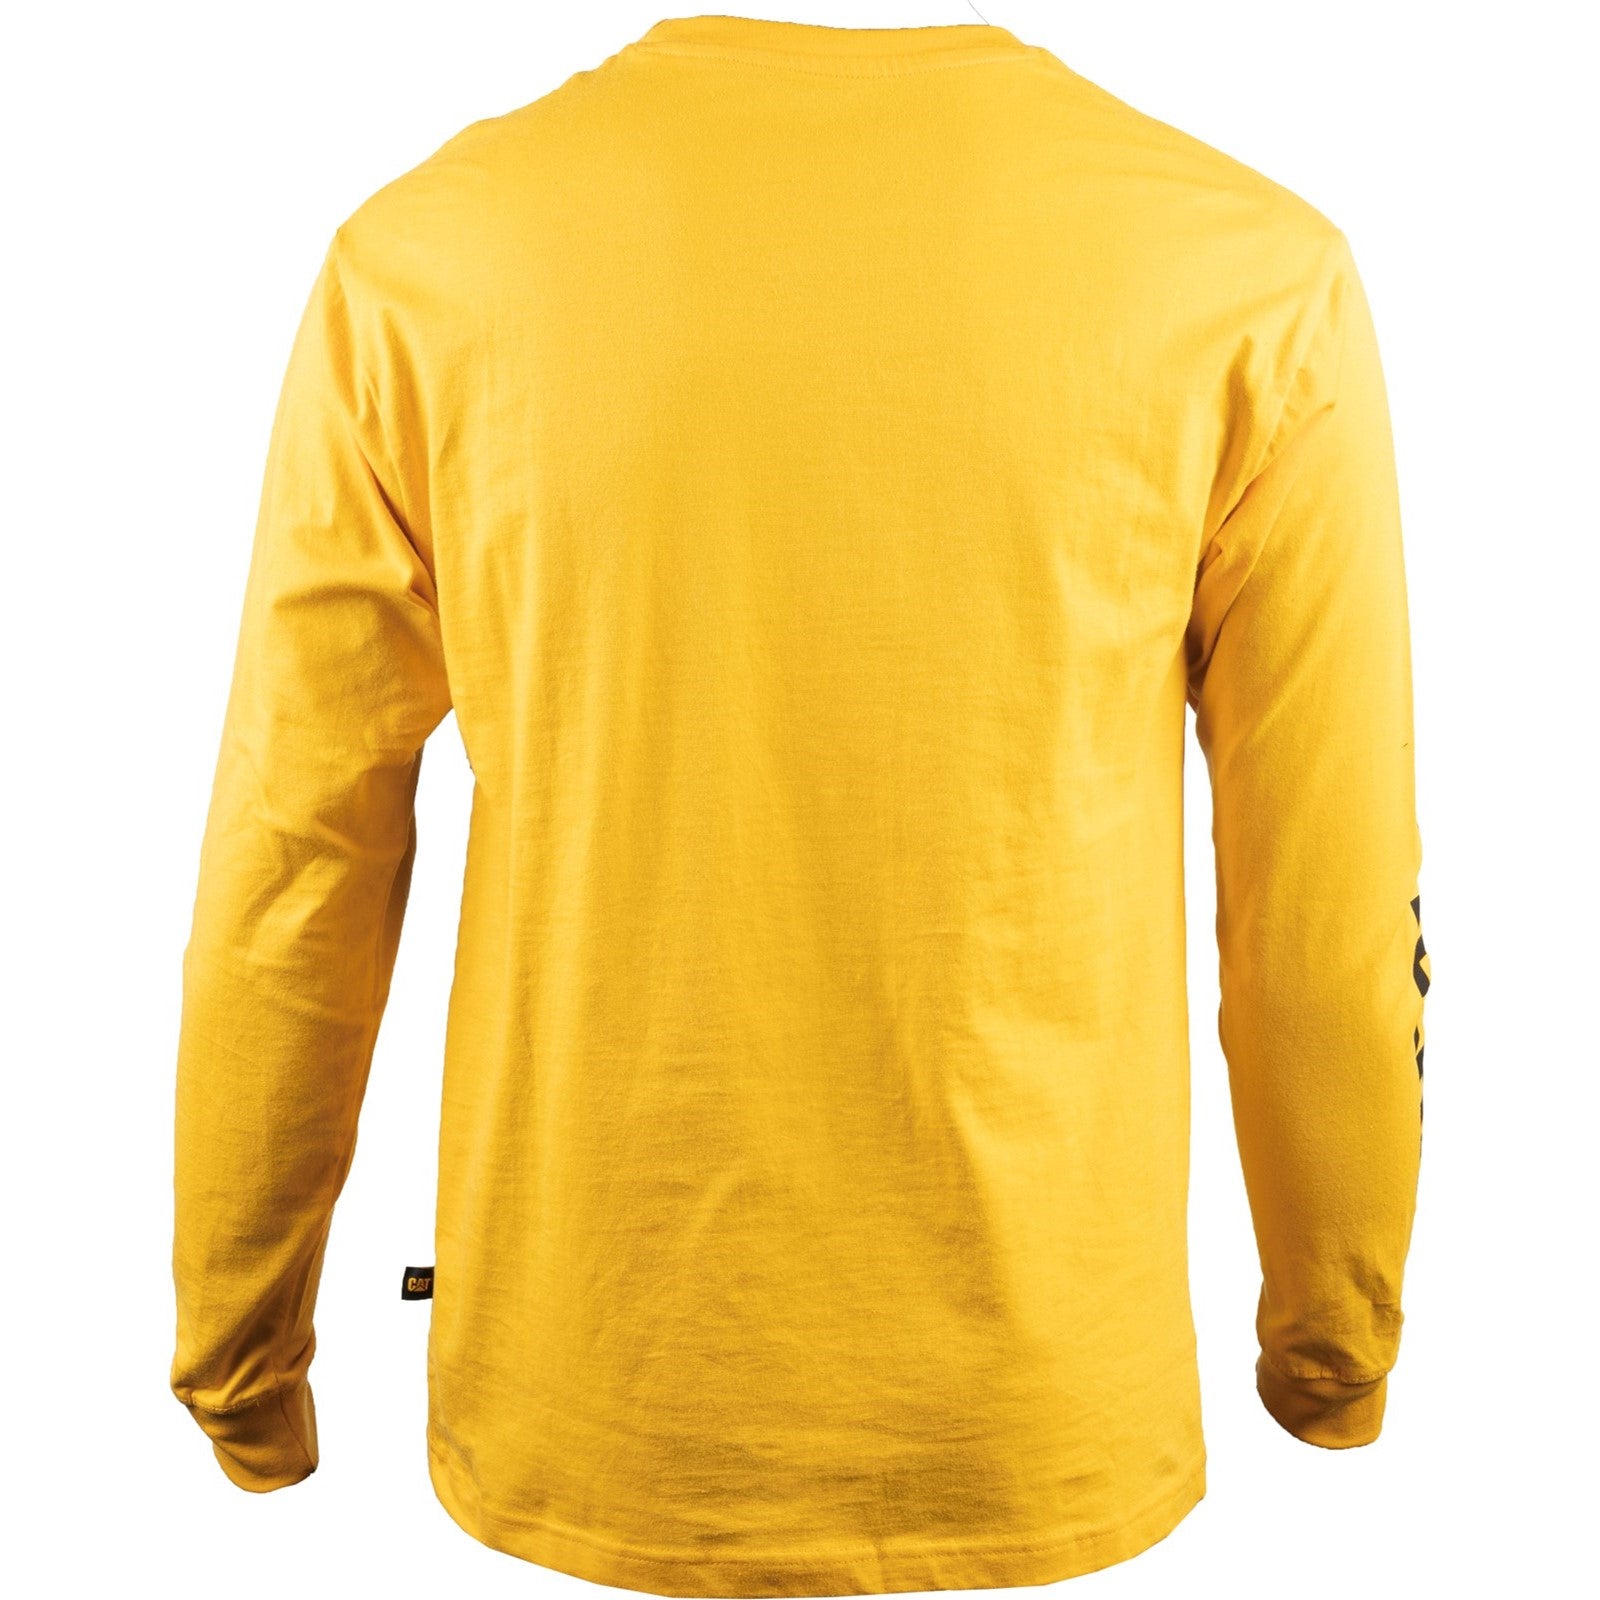 Caterpillar Trademark Banner Long Sleeve T-Shirt